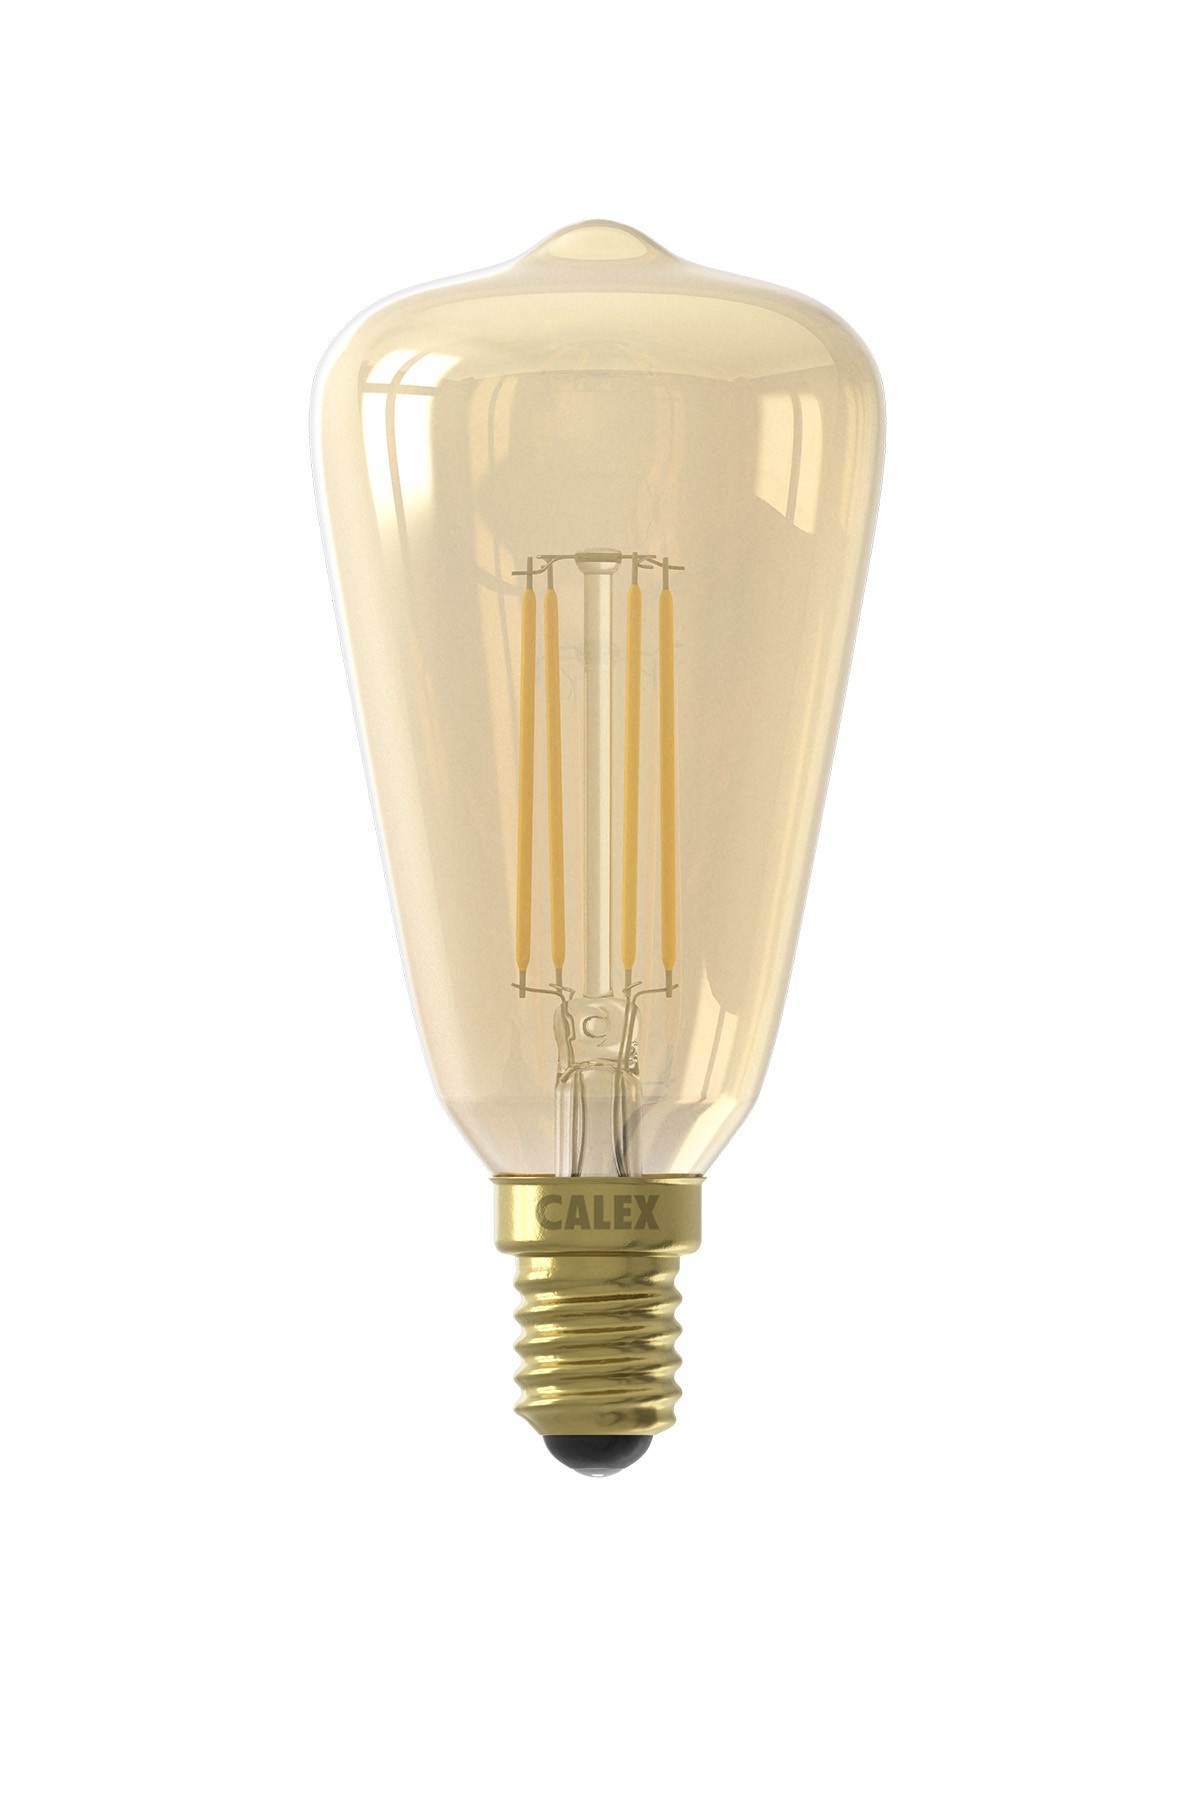 teugels Avondeten nicht Calex LED lamp goud - Rustiek - 3,5W - E14 - Dimbaar - Kynda Light